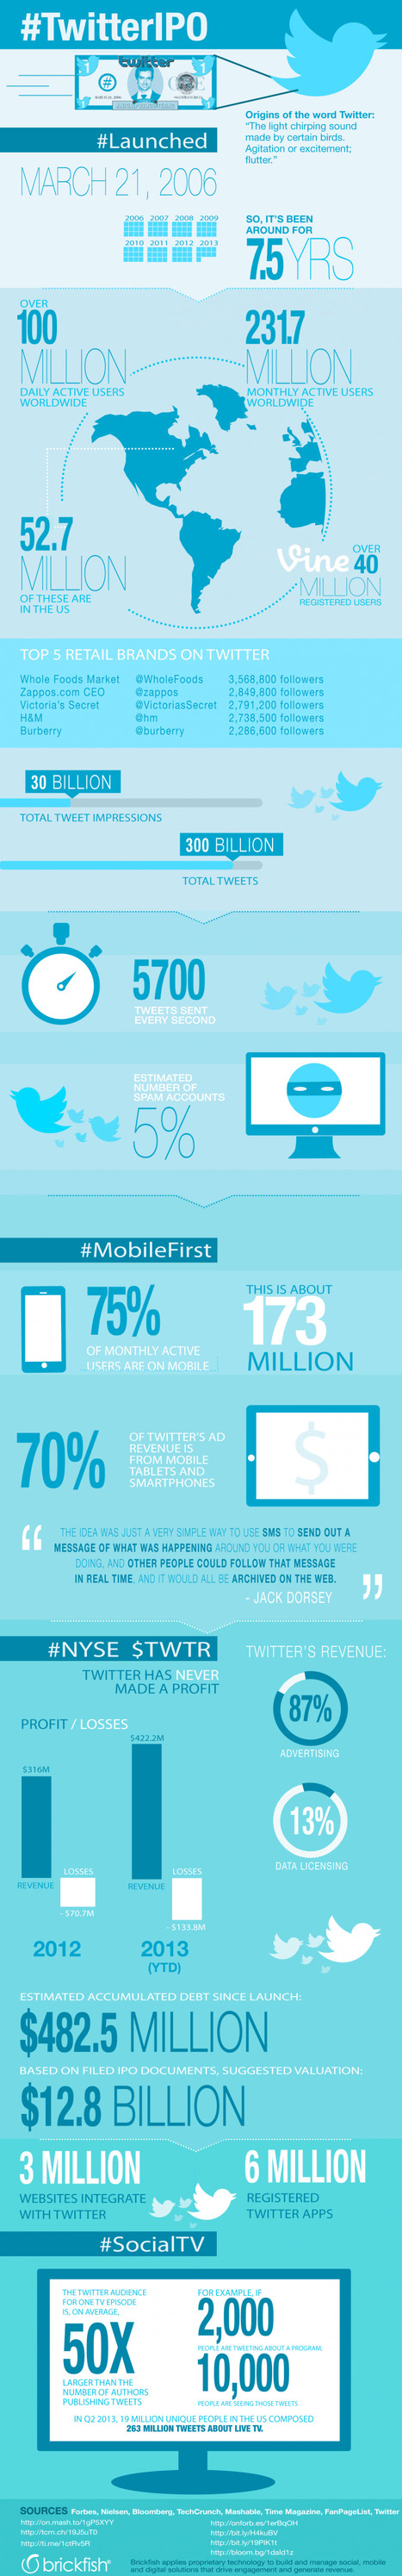 Cómo llega a la Bolsa Twitter #infografia #infographic #socialmedia | Seo, Social Media Marketing | Scoop.it